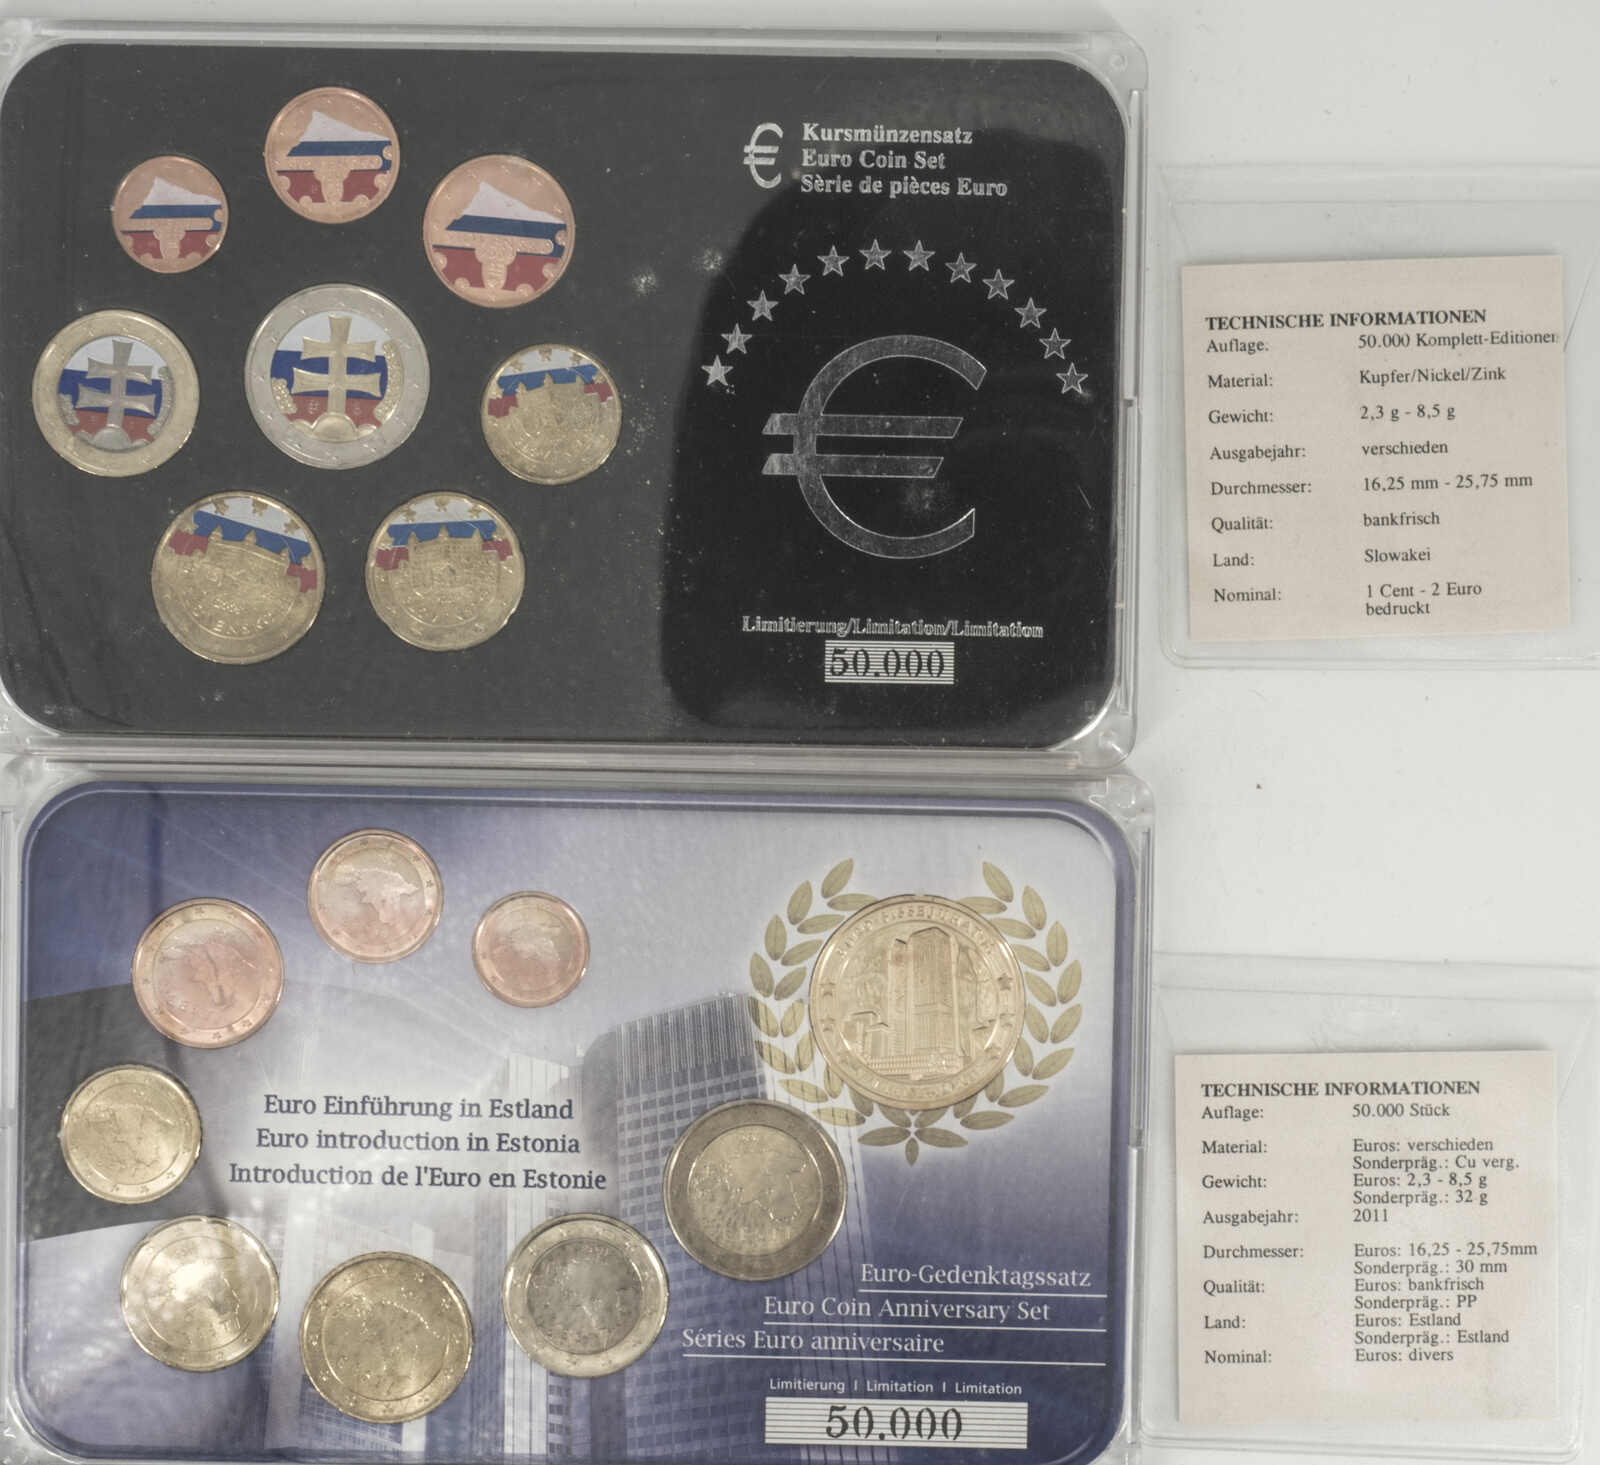 40.480.10.10: Europe - Slovakia - Euro - Coins - sets